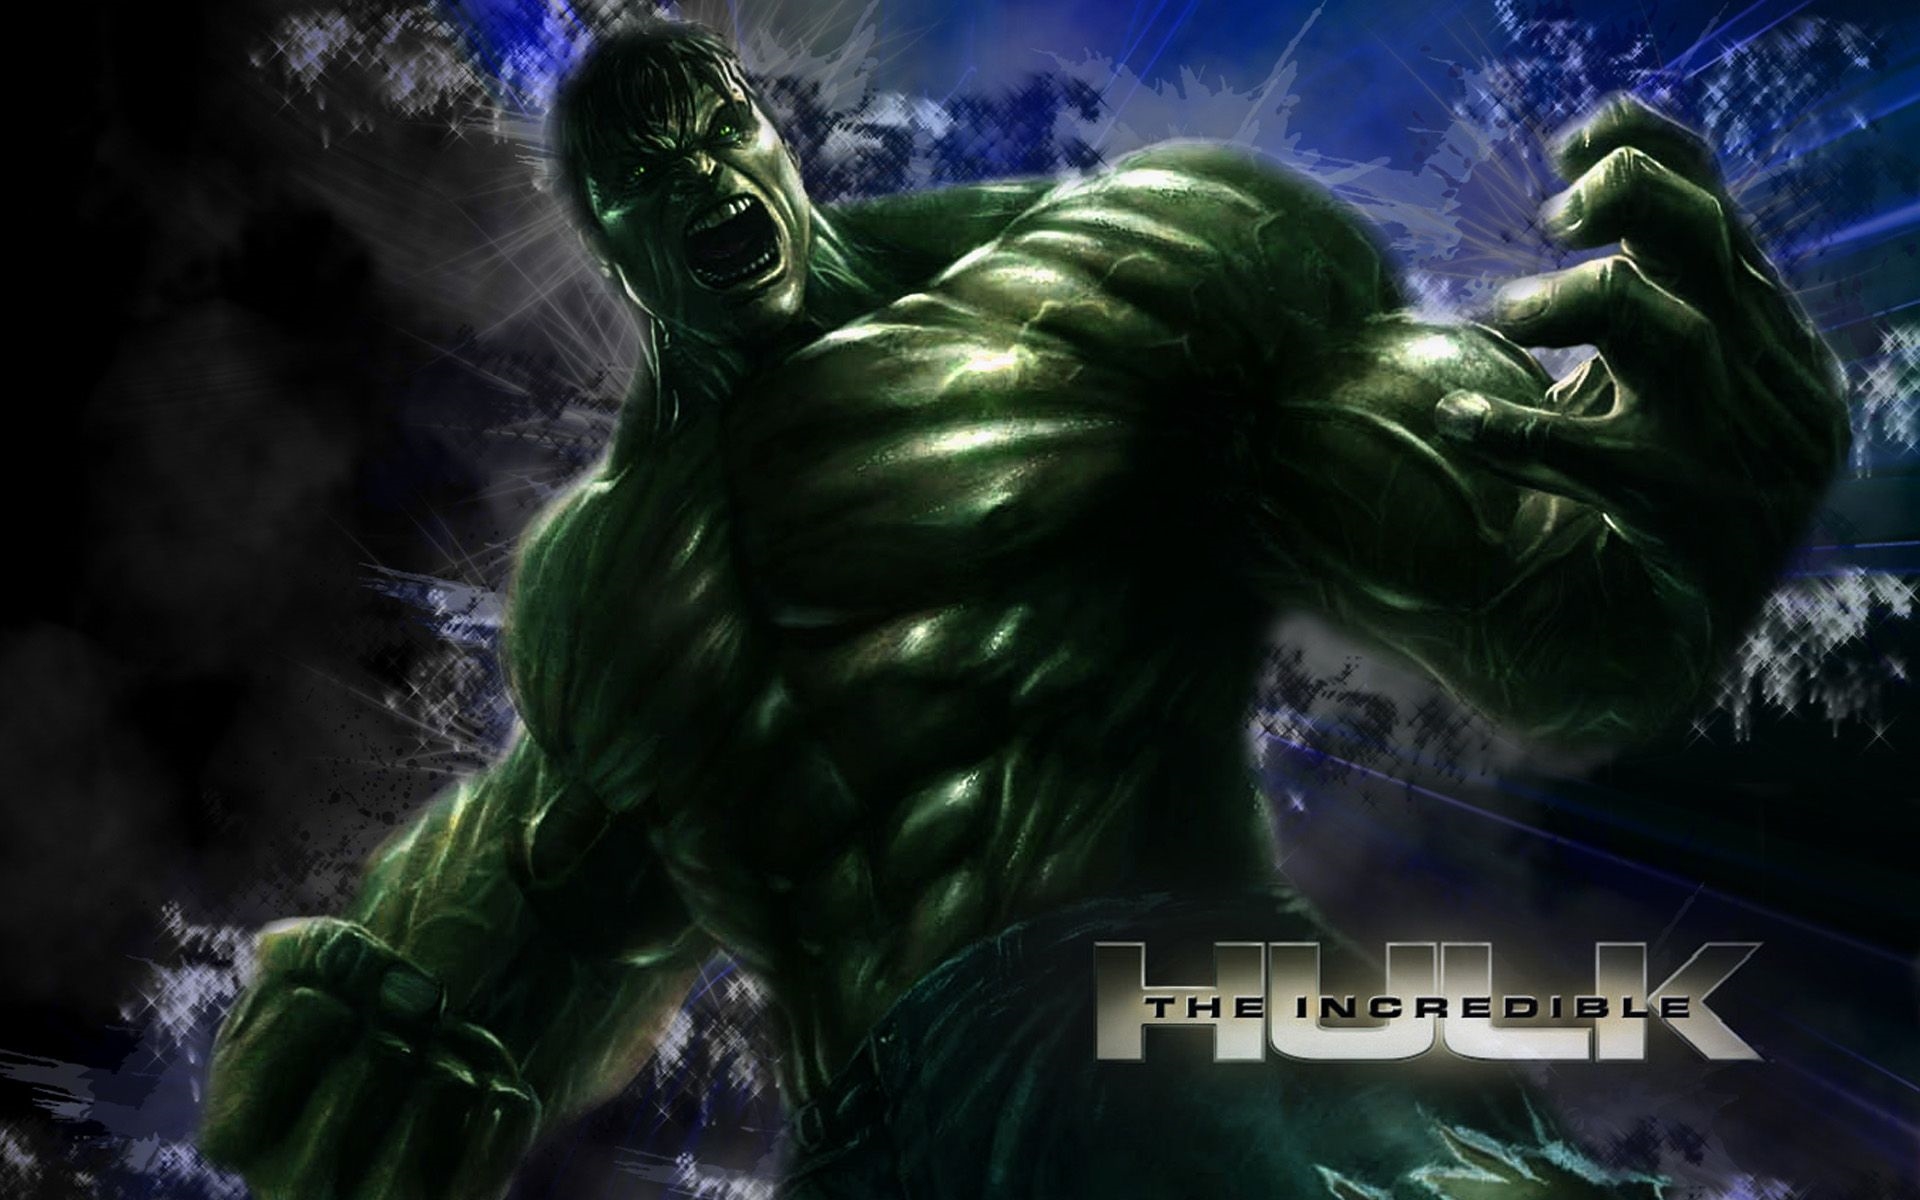 Hulk Wallpapers Free Download